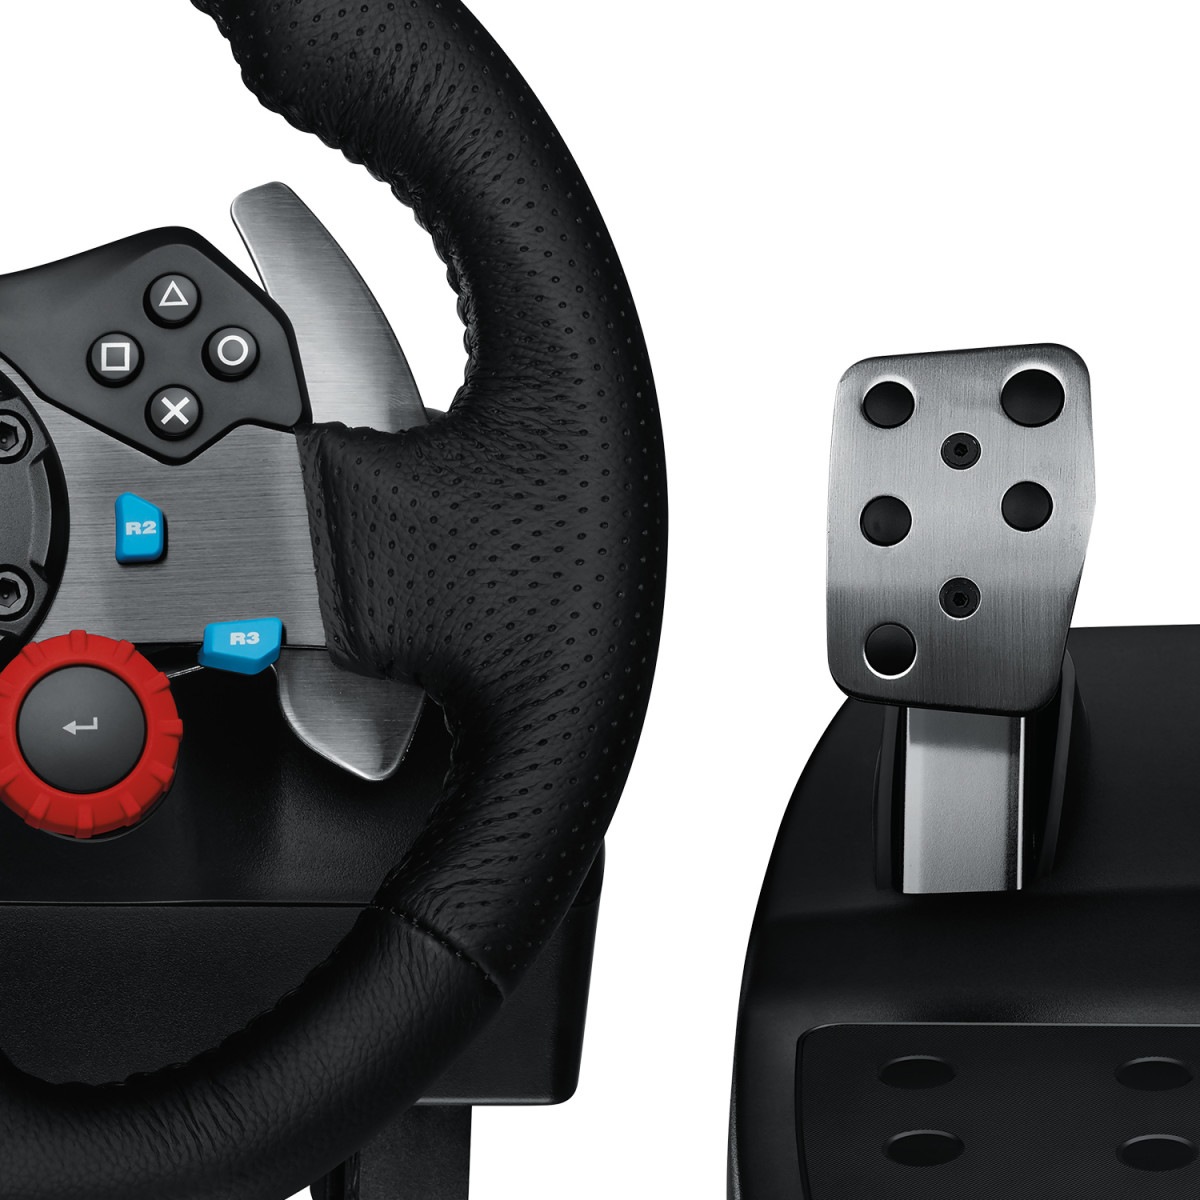 G29 Driving Racing Wheel PlayStation